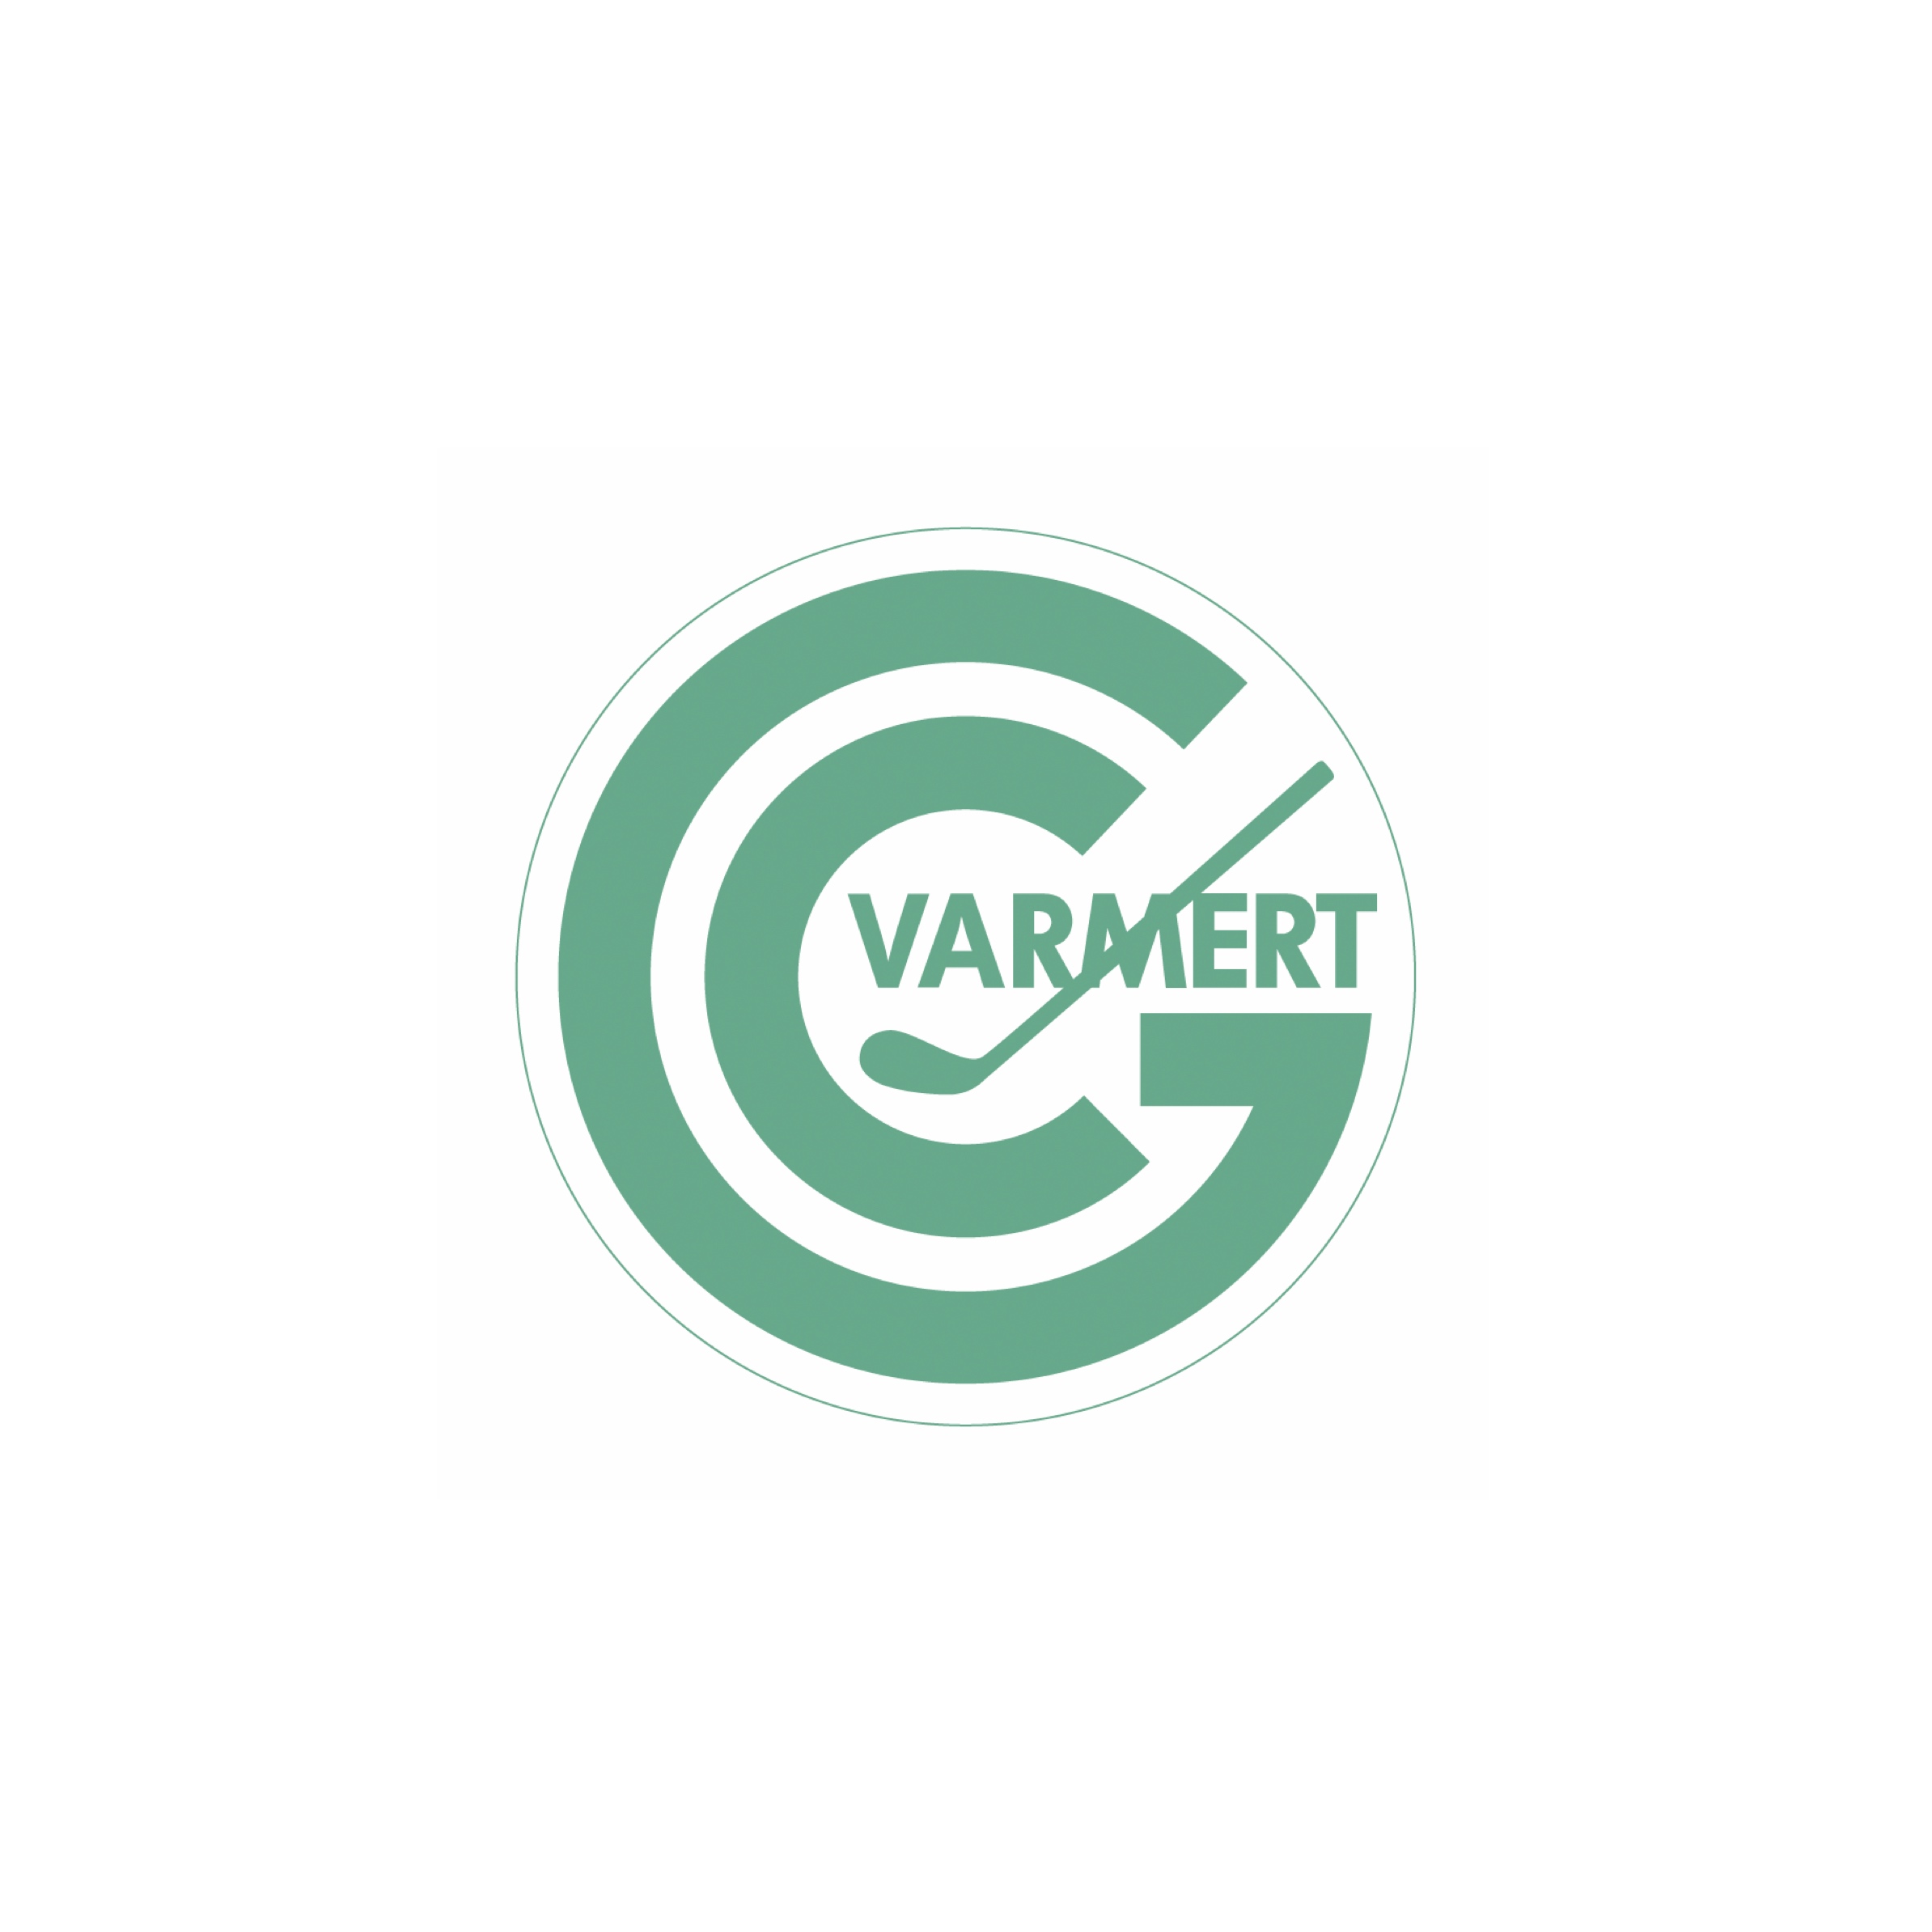 63. Varmert (Golf-Club Varmert e.V.)